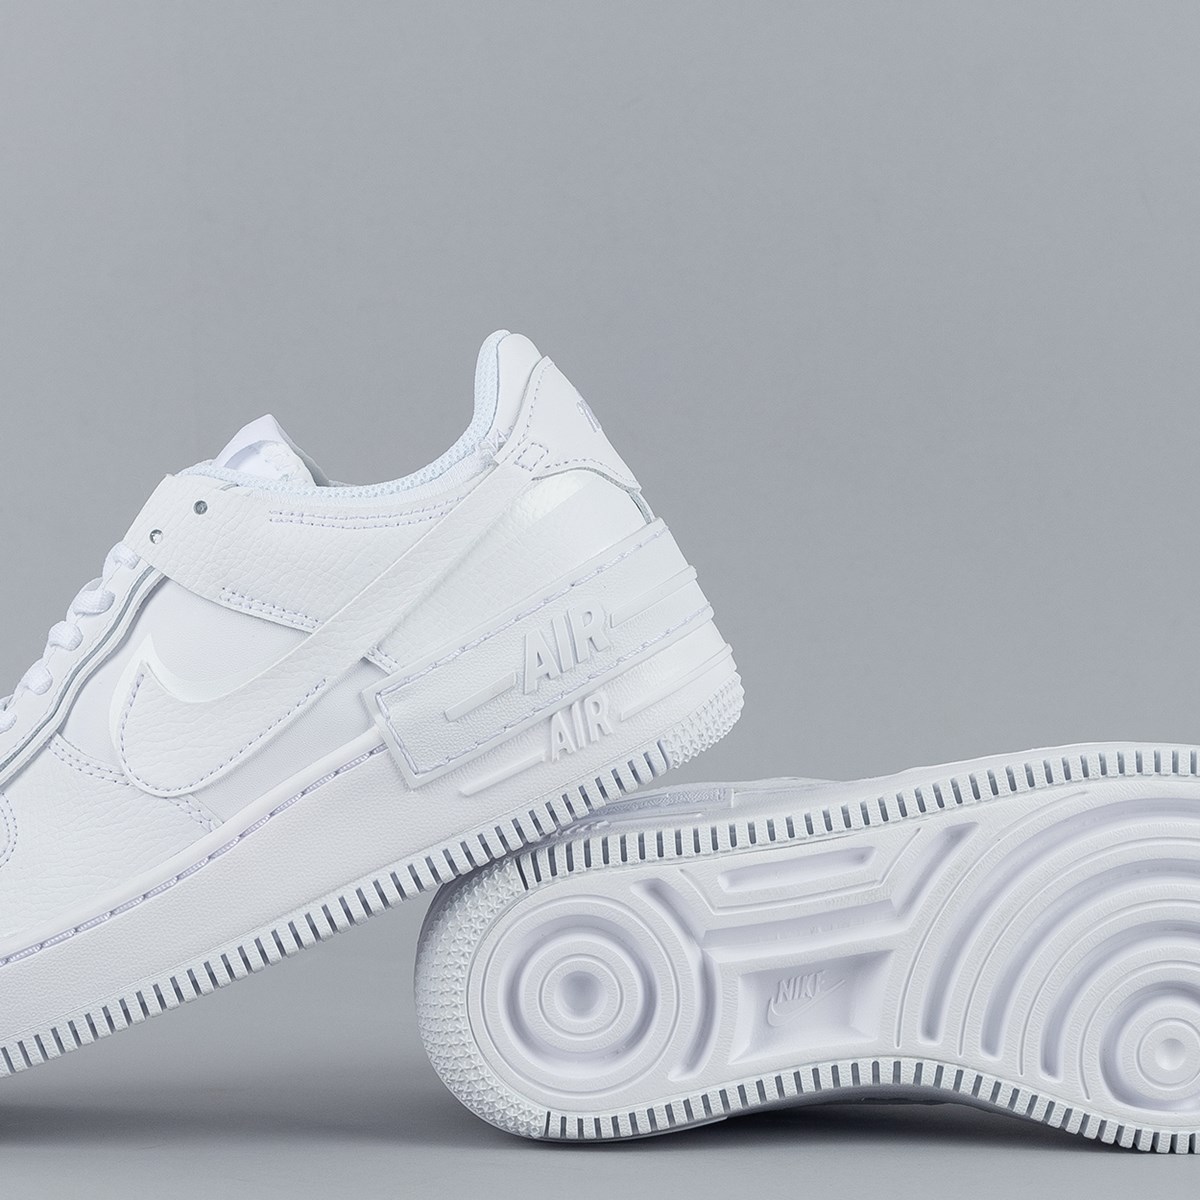 Nike air branco: Com o melhor preço